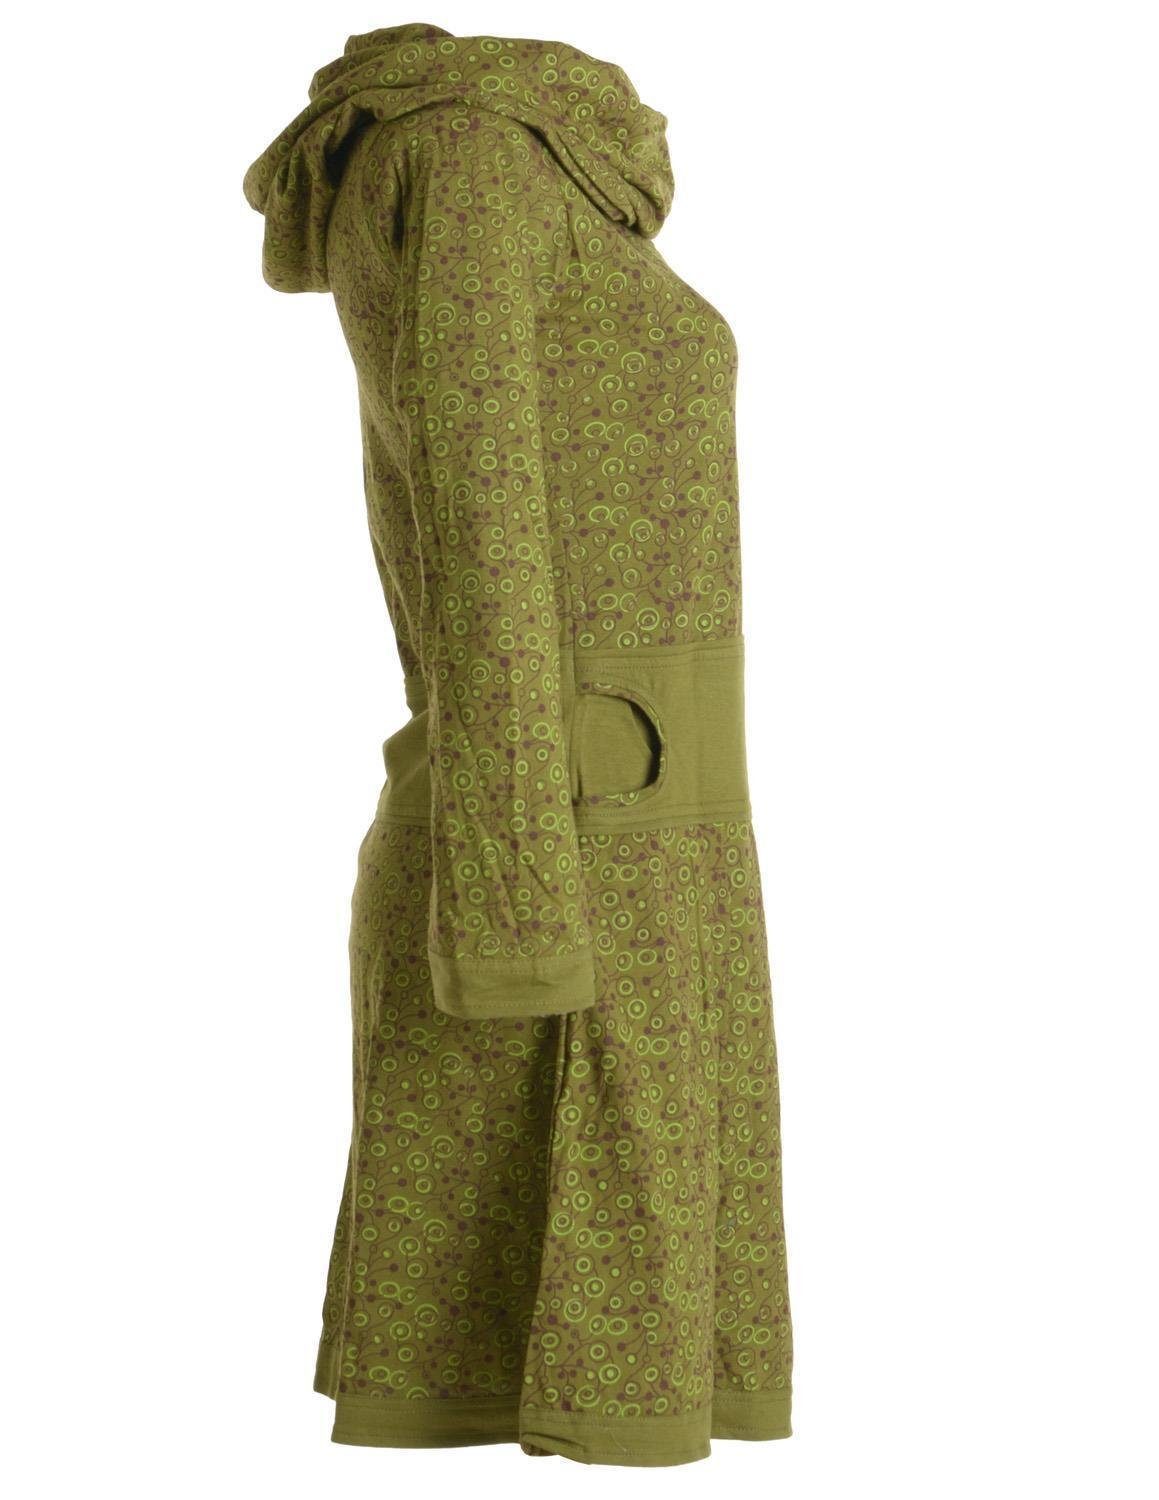 Vishes Jerseykleid Bedrucktes Kleid Ethno, mit aus Style olive Hippie Goa, Baumwolle Boho, Schalkragen